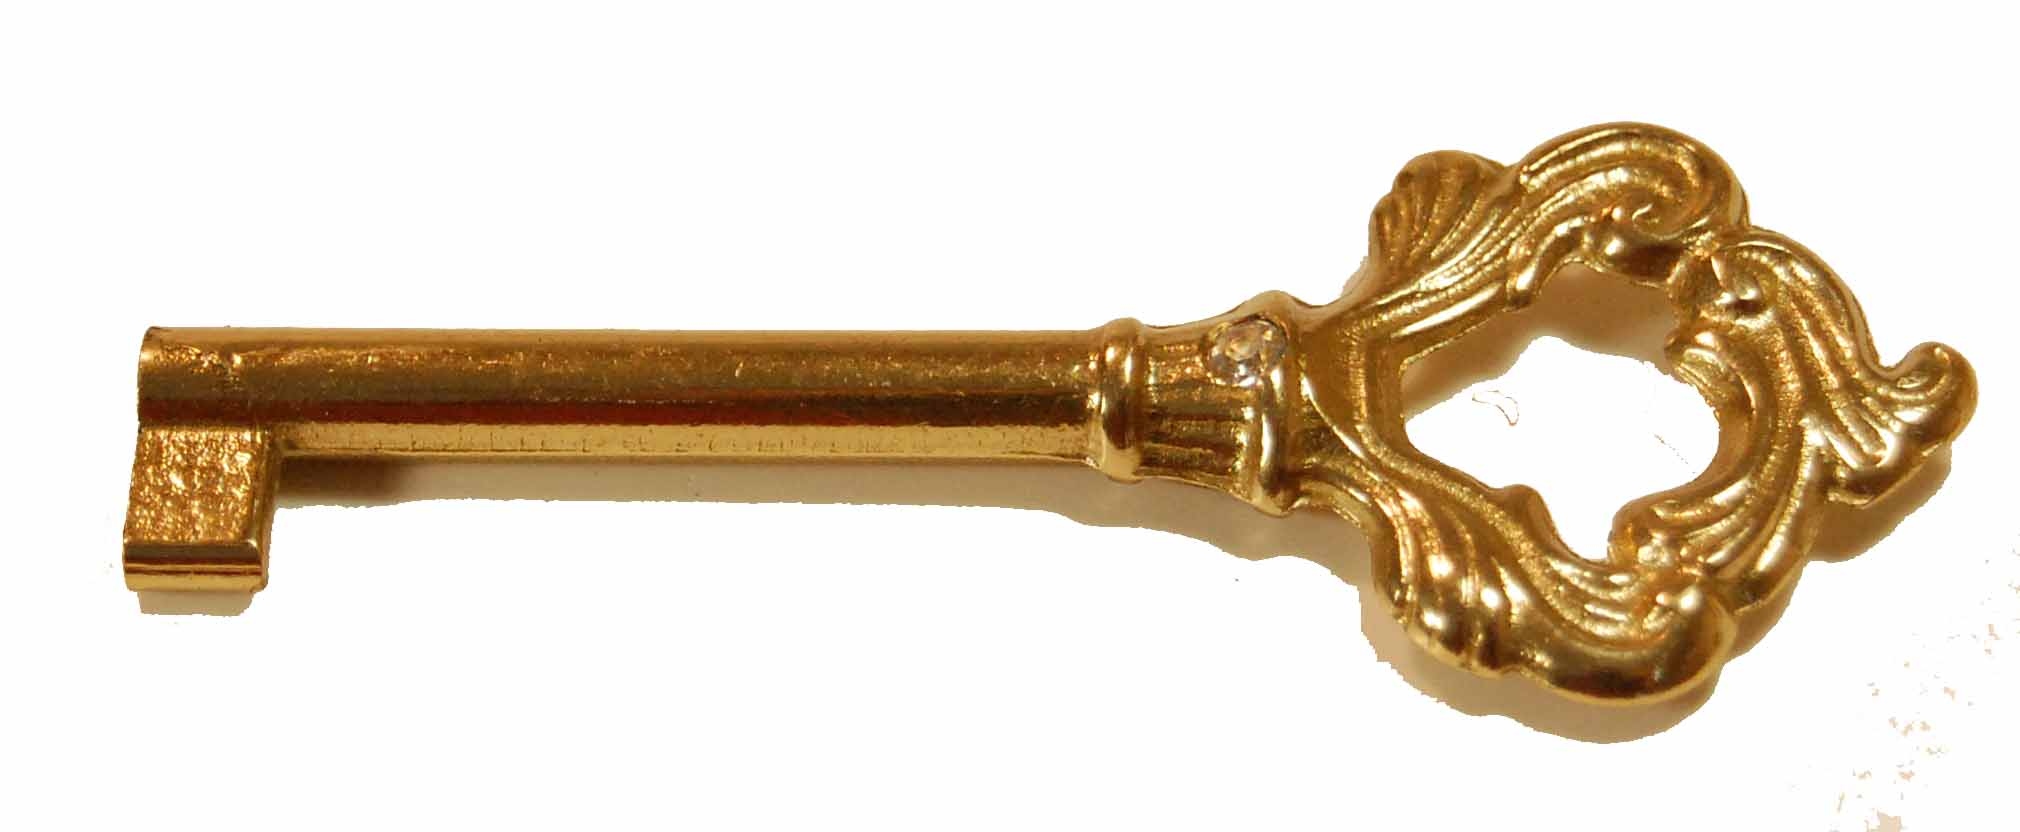 Ломаный ключ